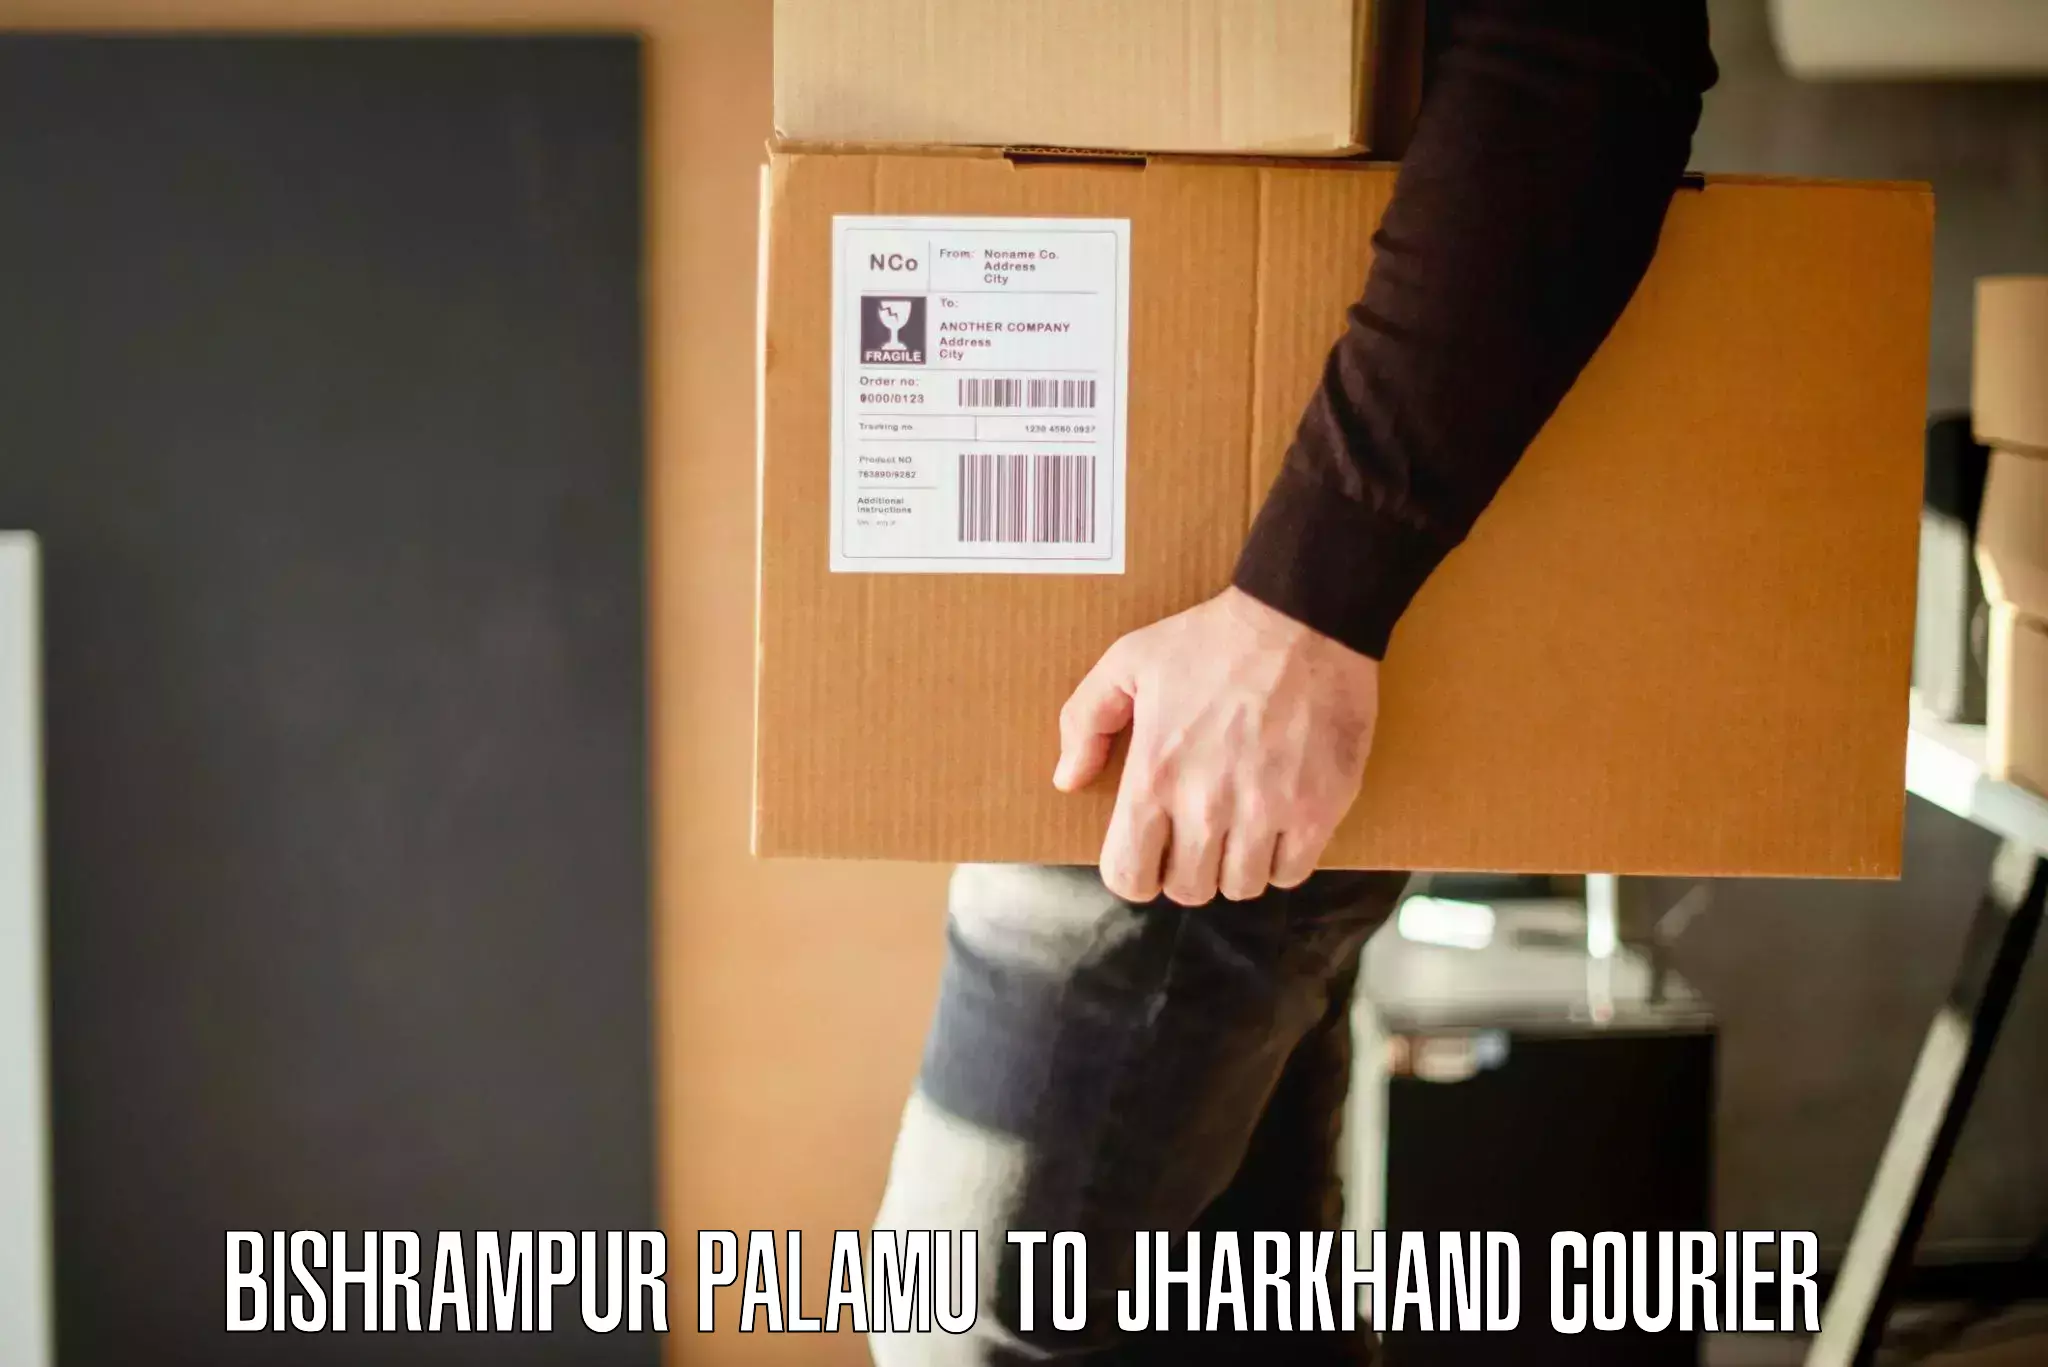 Furniture moving experts Bishrampur Palamu to Poreyahat